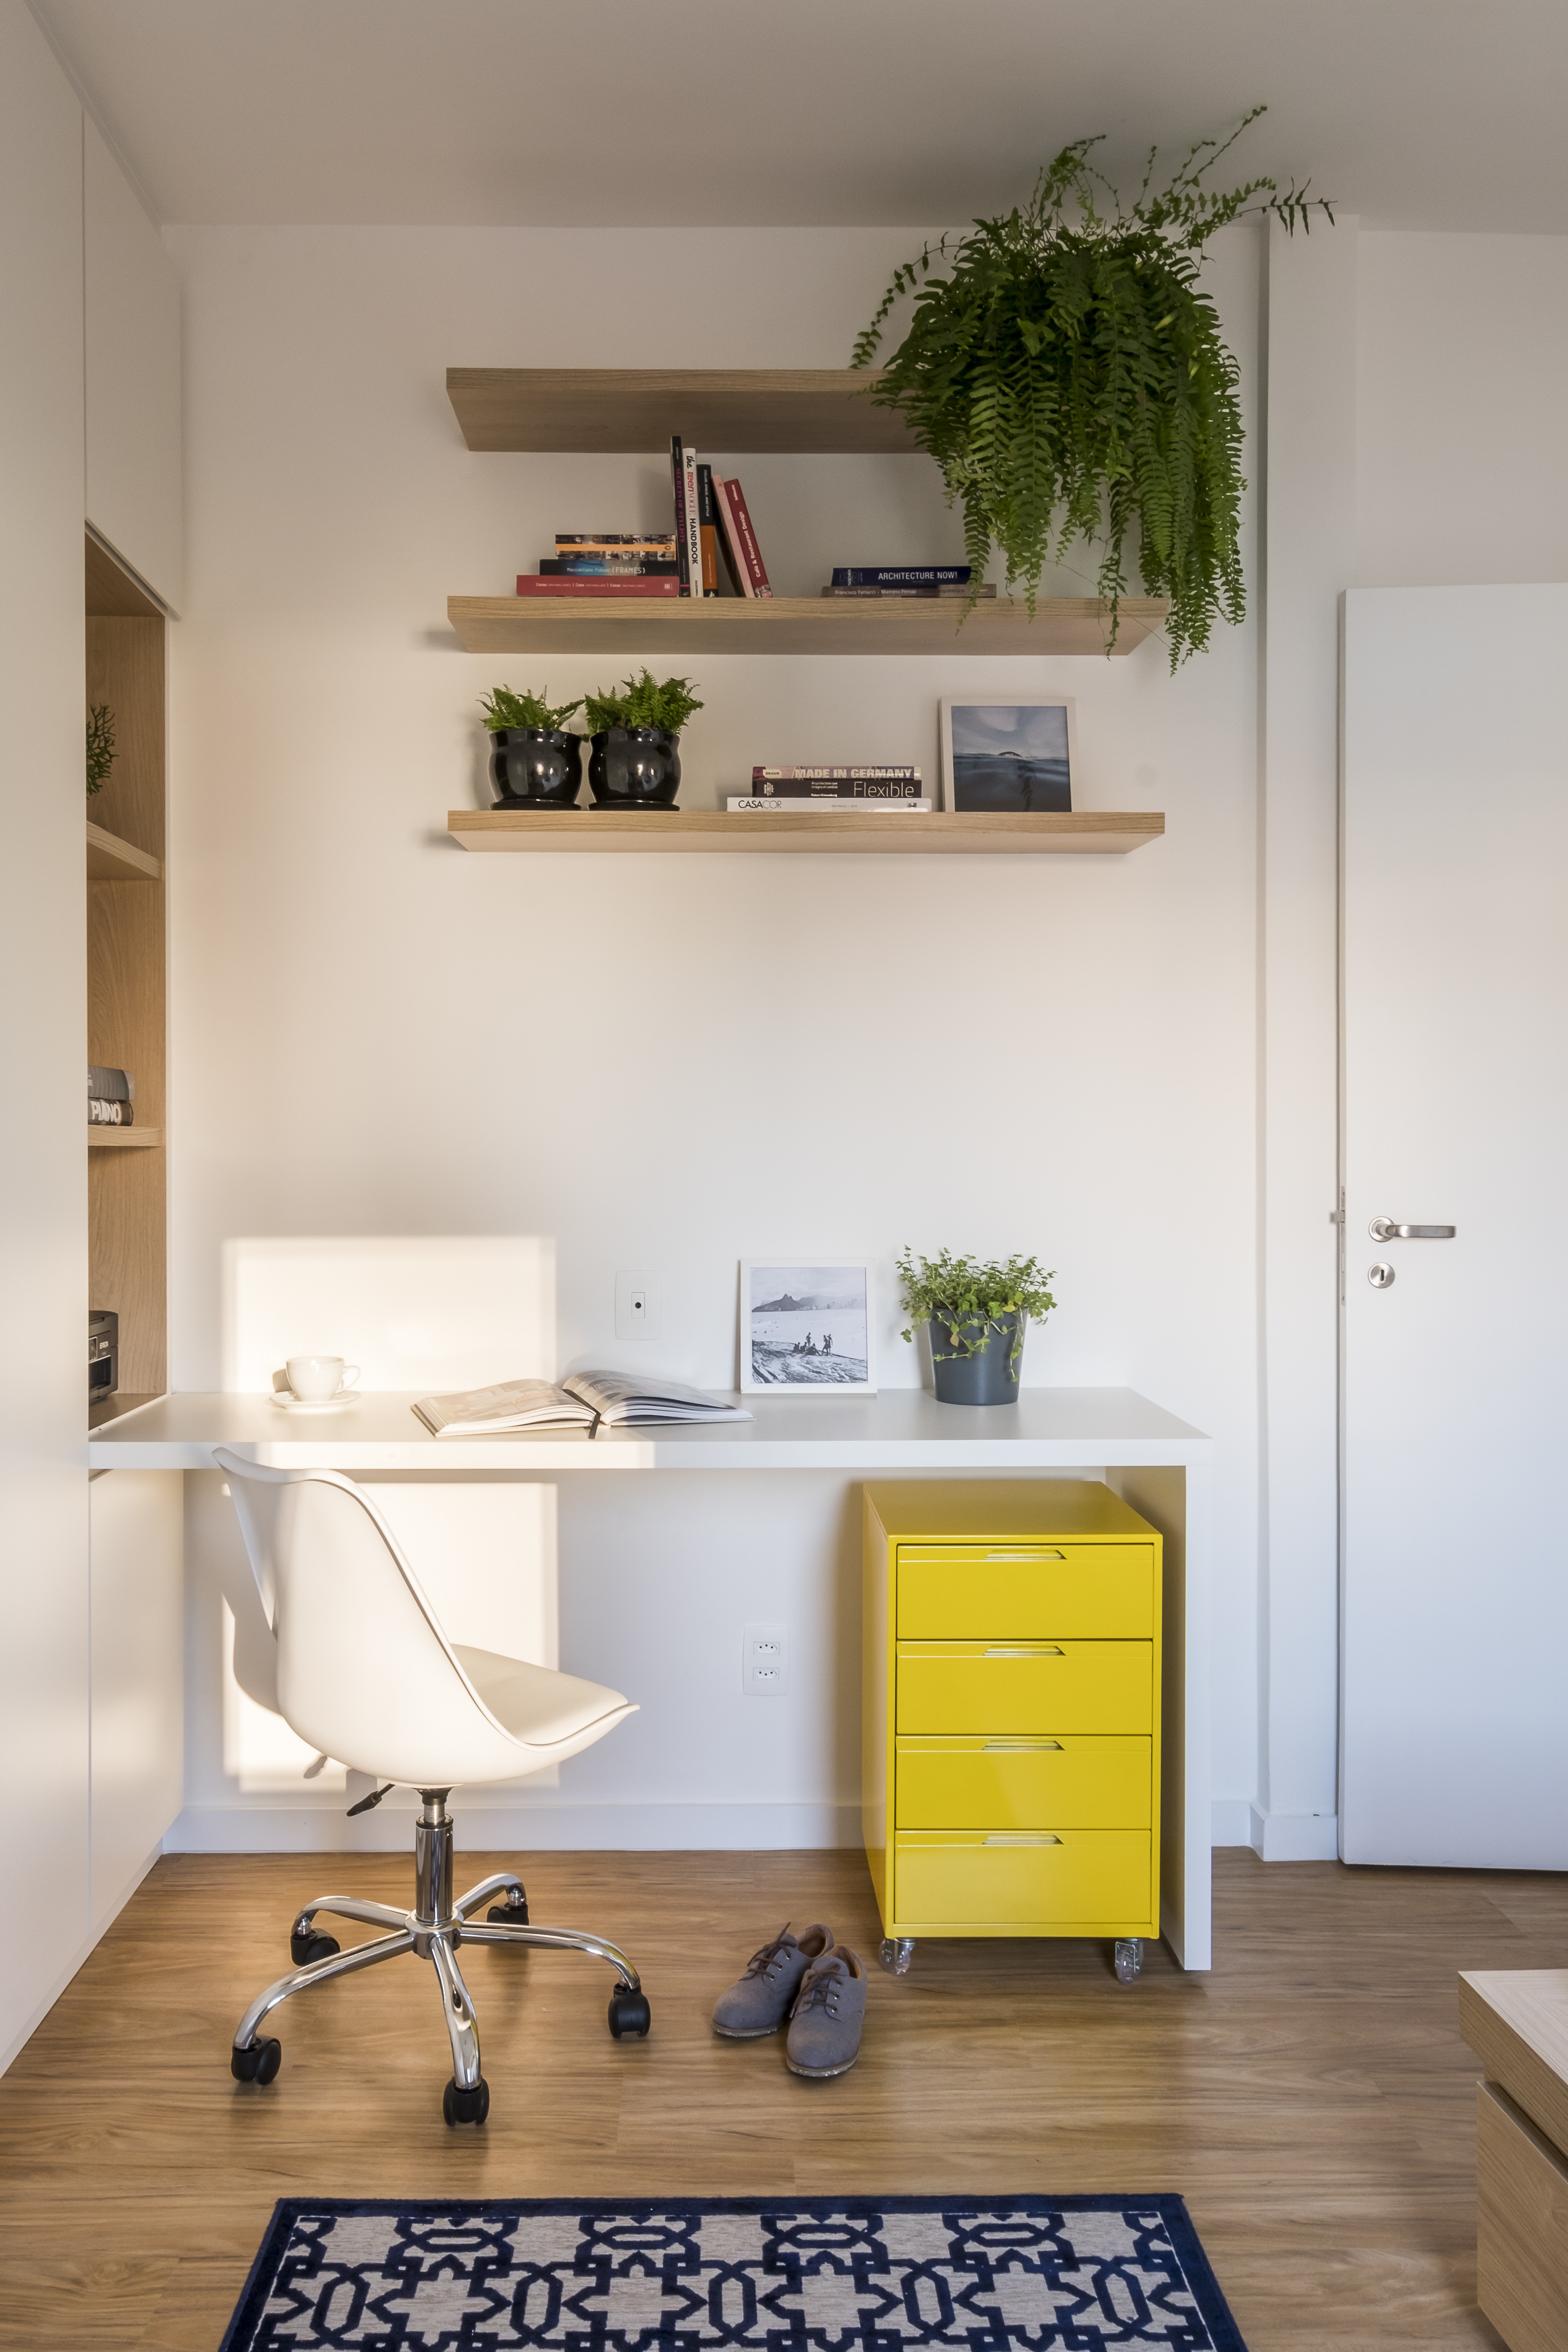 Home office pequeno: ideias de decoração para quem tem pouco espaço (Foto: Divulgação)